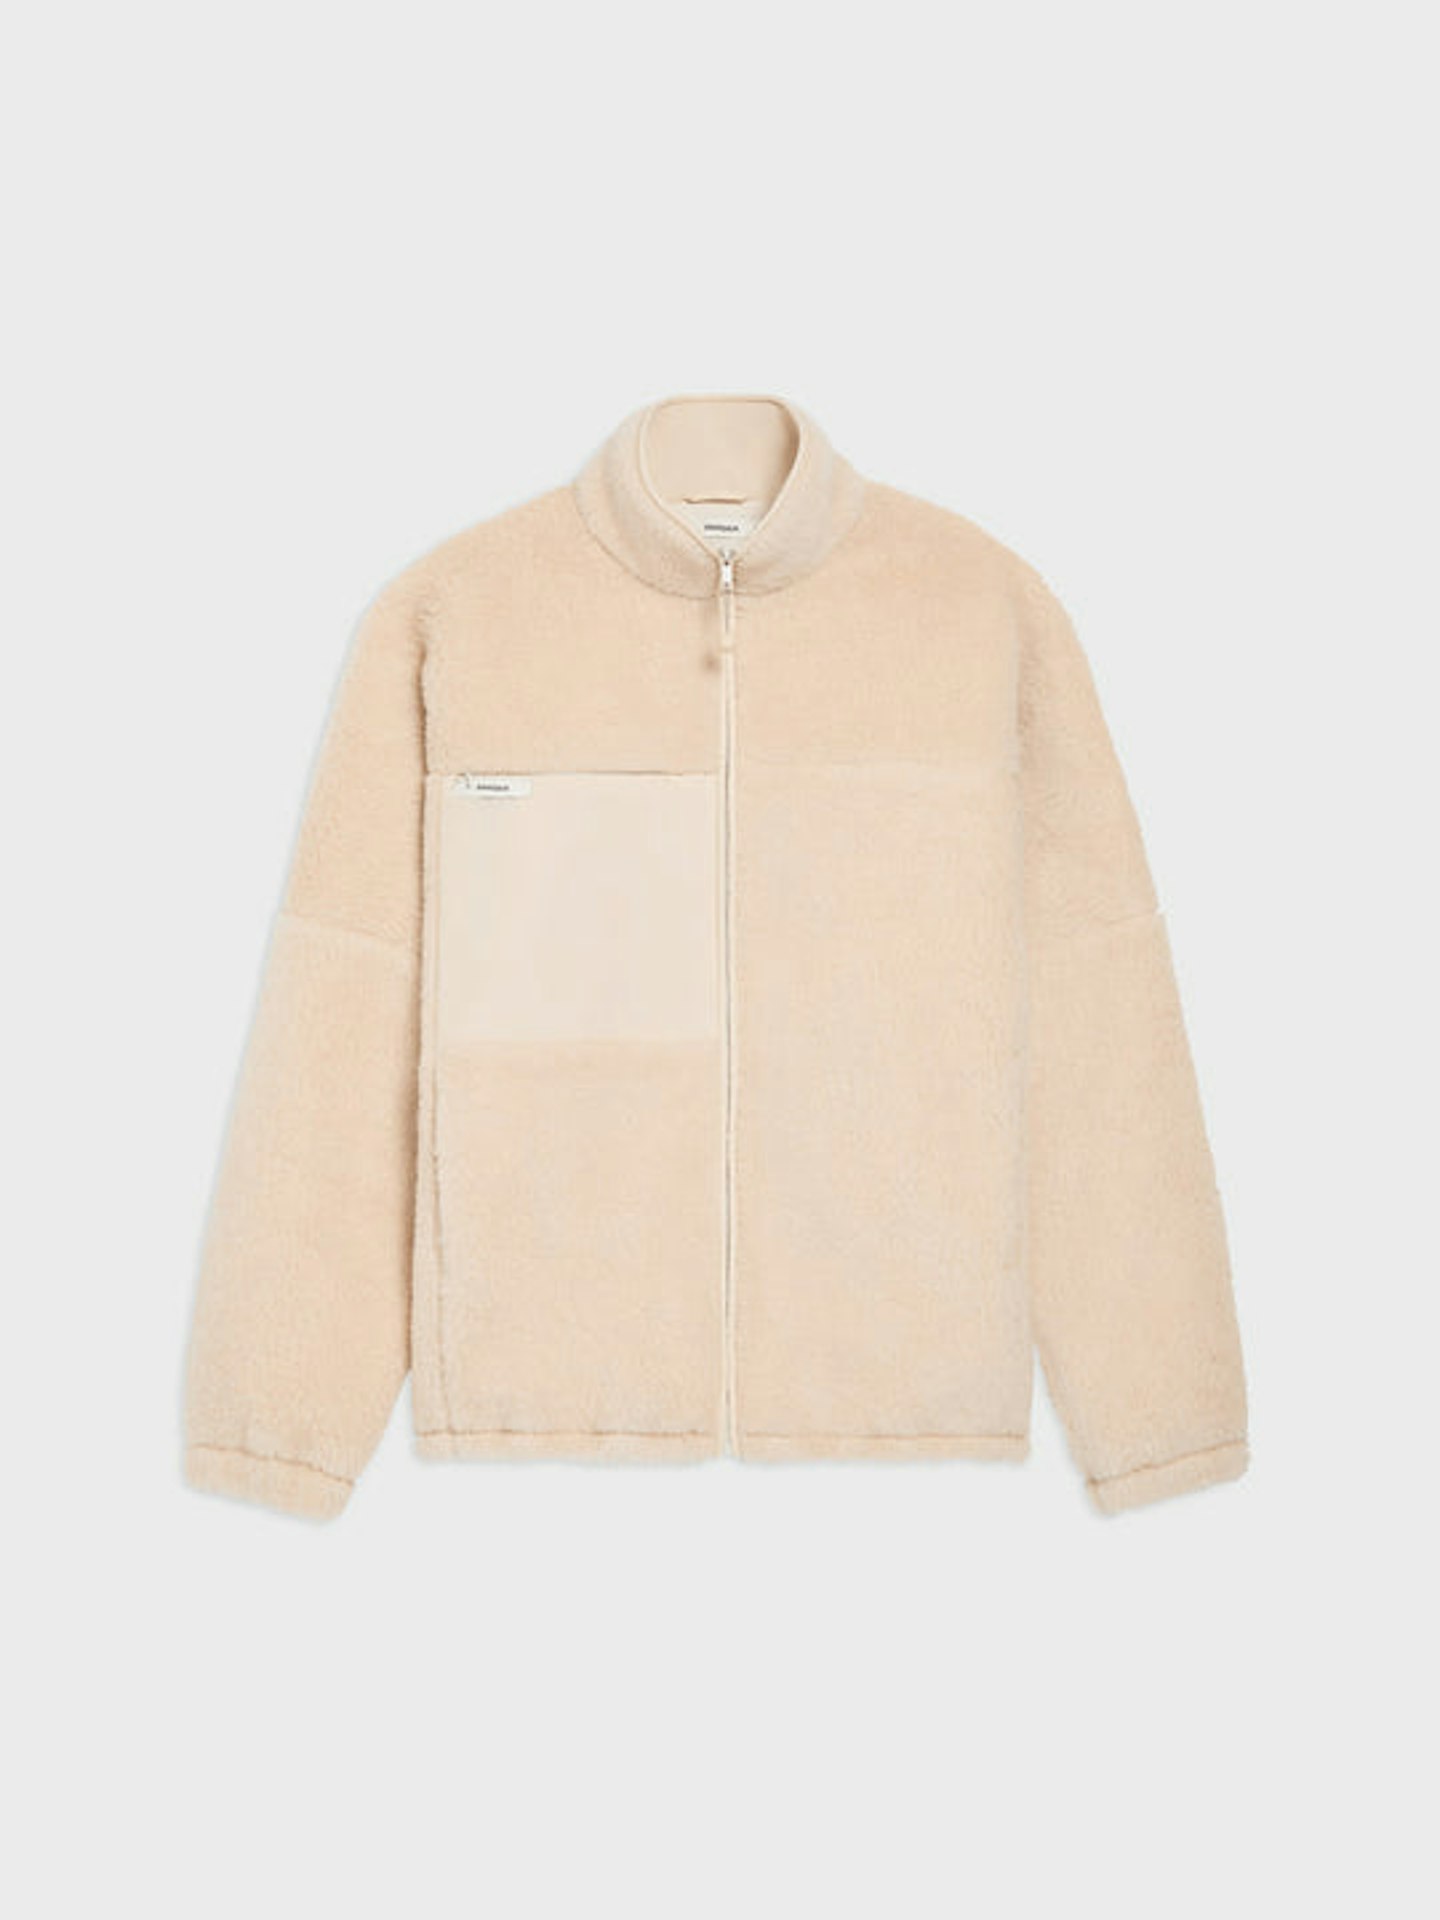 Pangaia, Fleece Zipped Jacket, £255